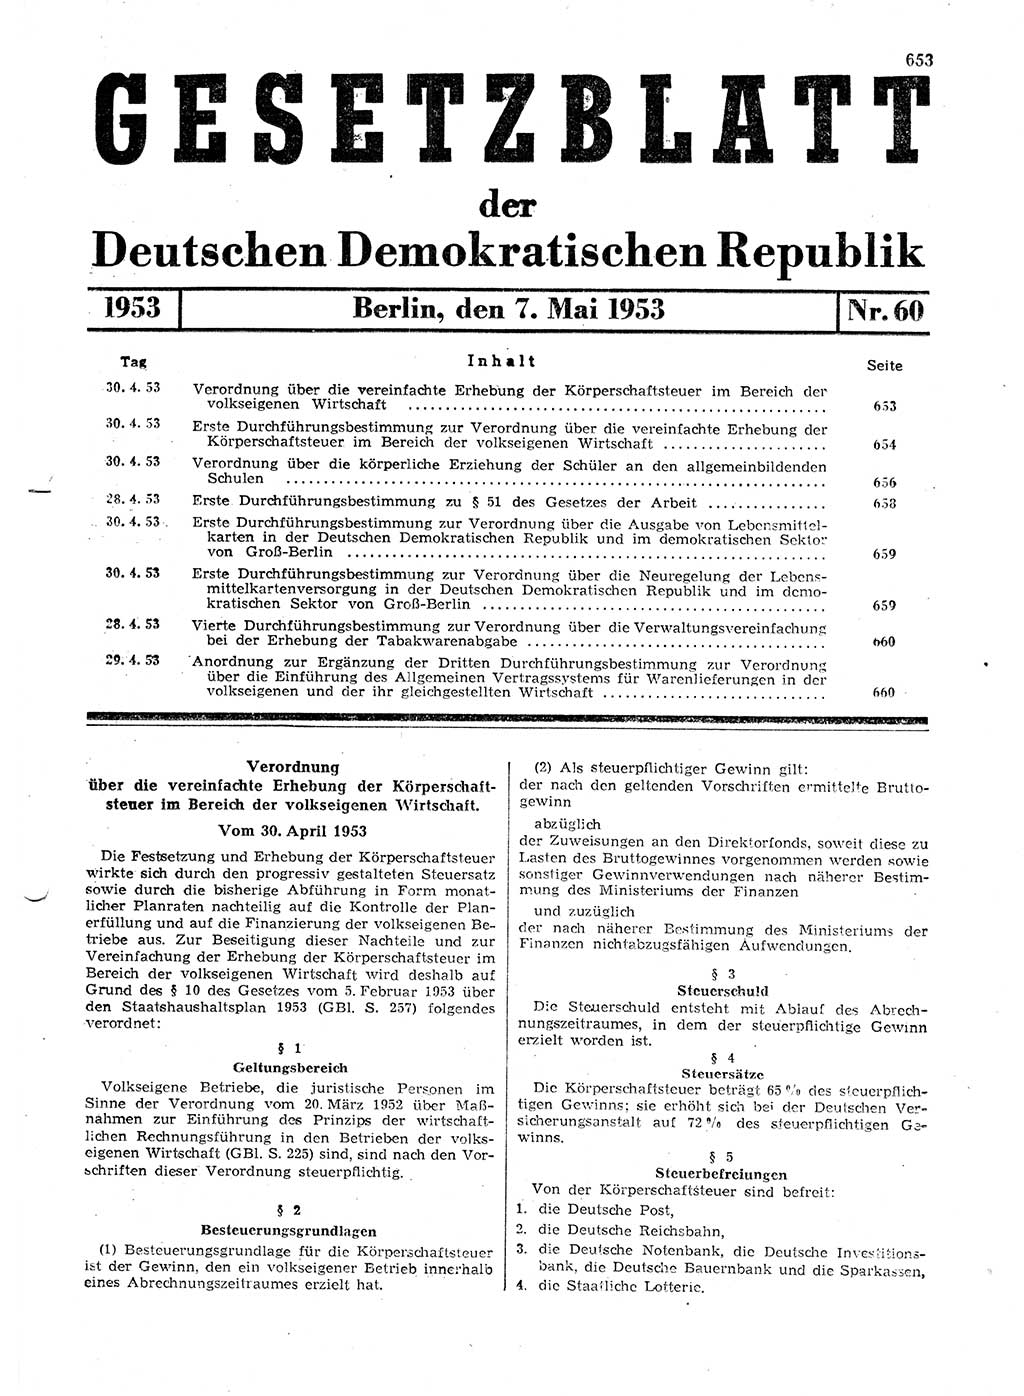 Gesetzblatt (GBl.) der Deutschen Demokratischen Republik (DDR) 1953, Seite 653 (GBl. DDR 1953, S. 653)